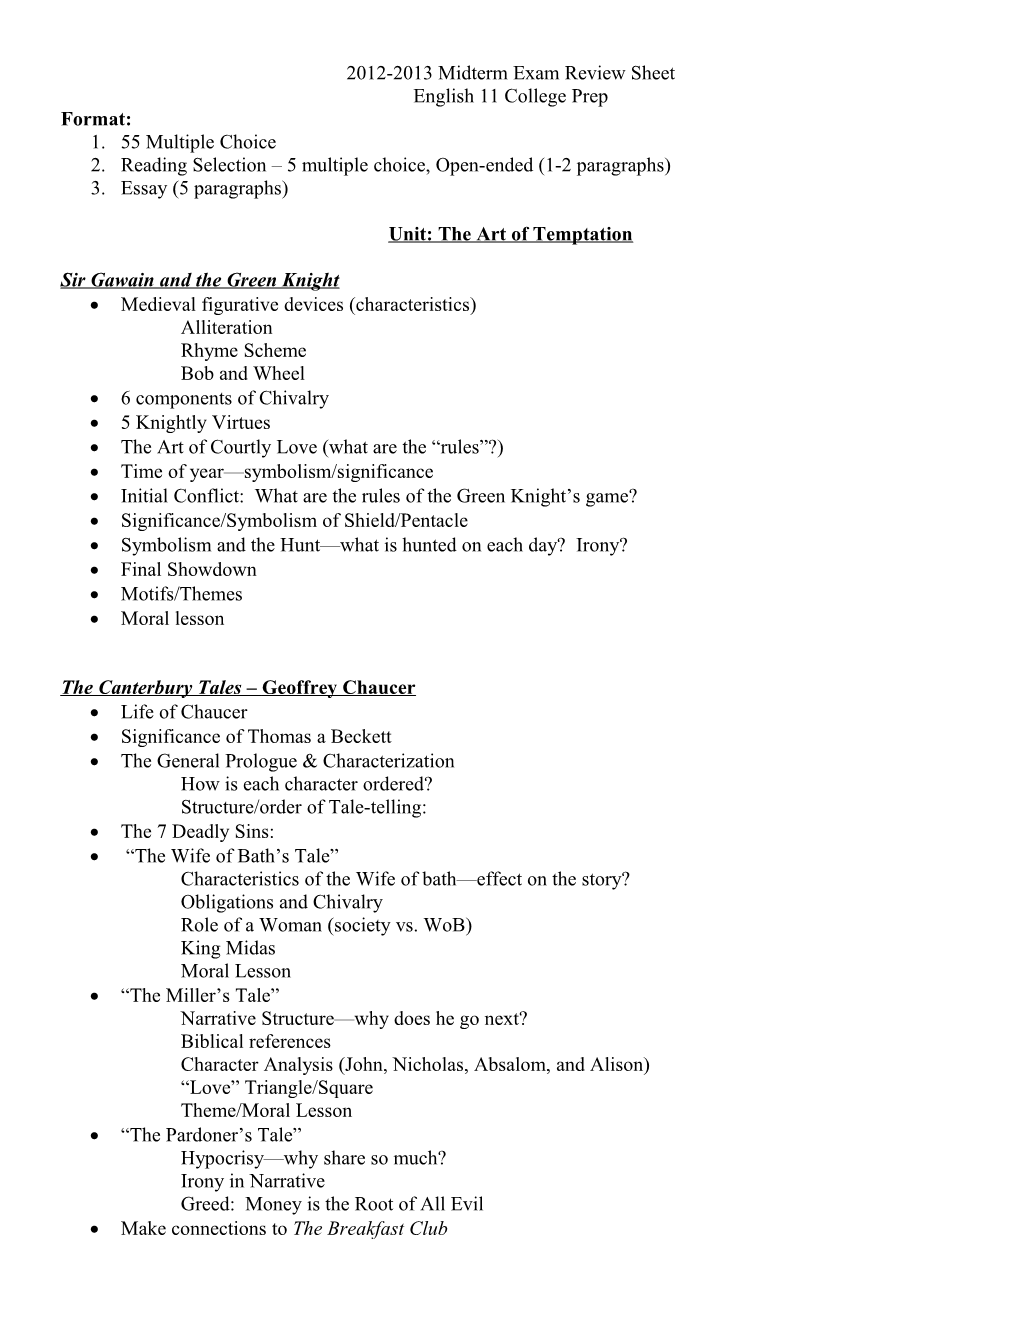 2009-2010 Midterm Exam Review Sheet